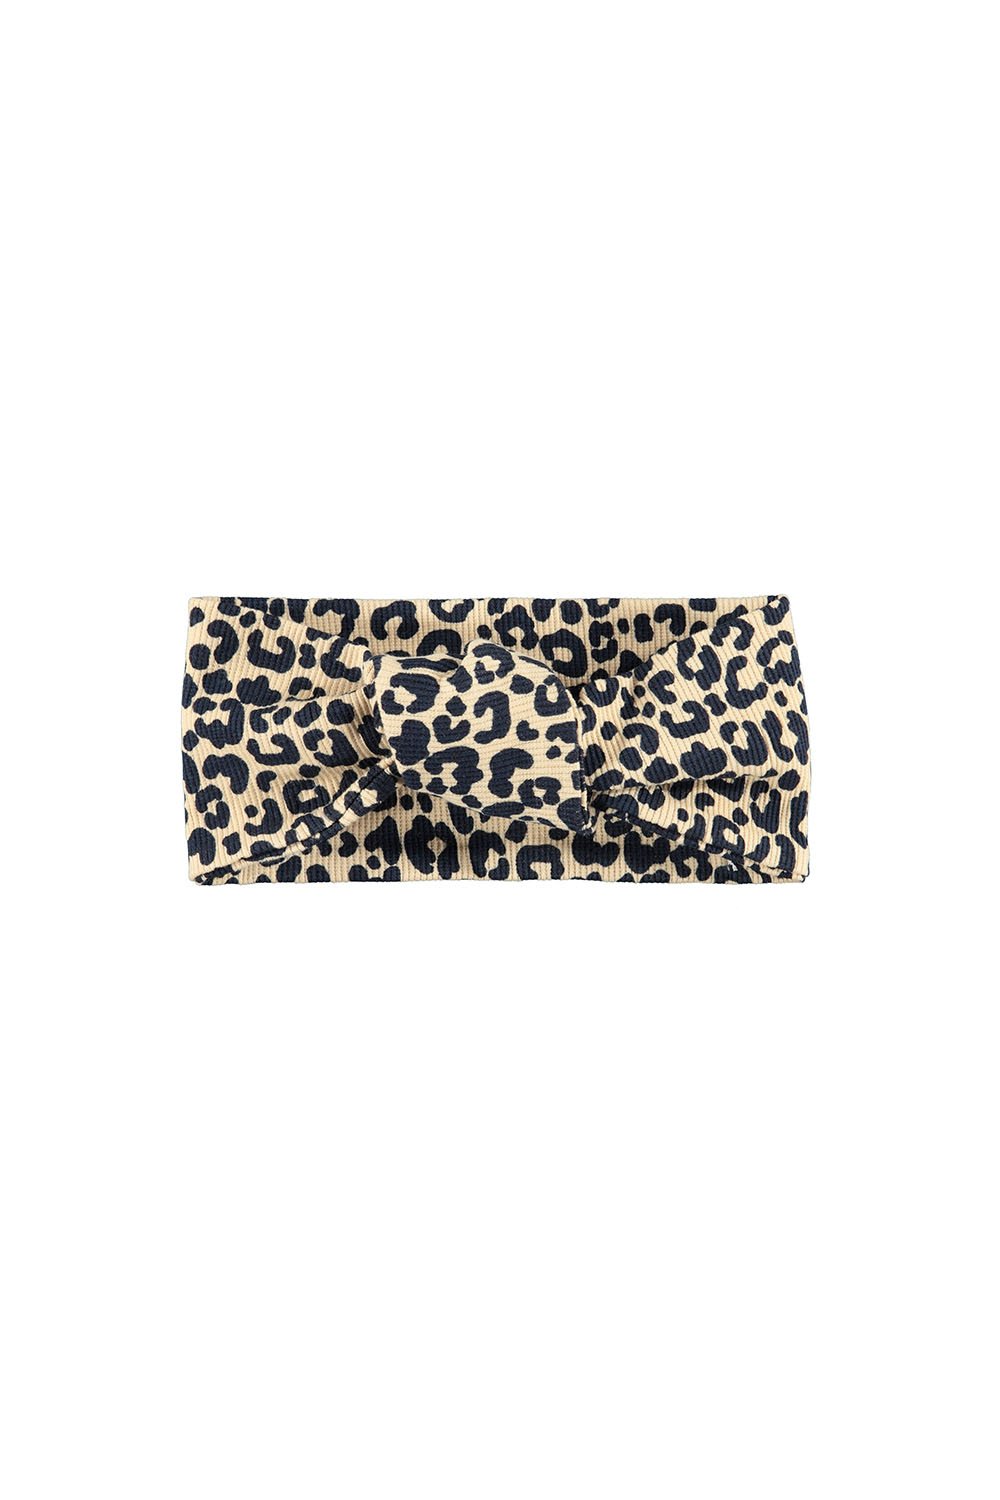 Meisjes Little leopard hairband van LOOXS Little in de kleur sandy leopard in maat ONE.